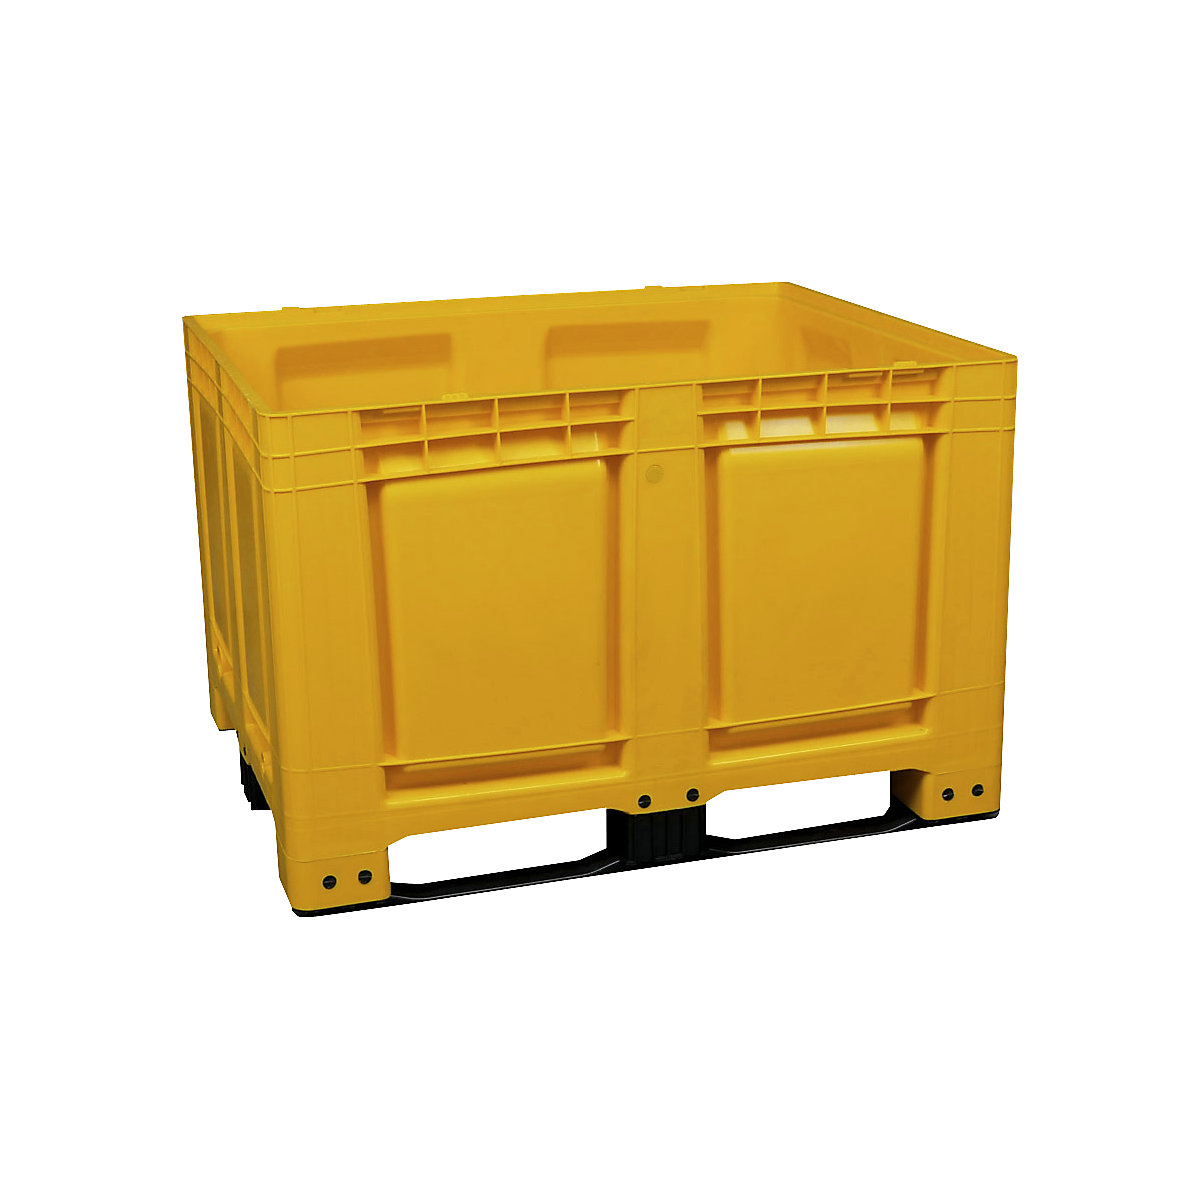 Contenedor-palet, de PEAD, L x A x H 1200 x 1000 x 790 mm, 3 listones de deslizamiento, cerrado, amarillo-9